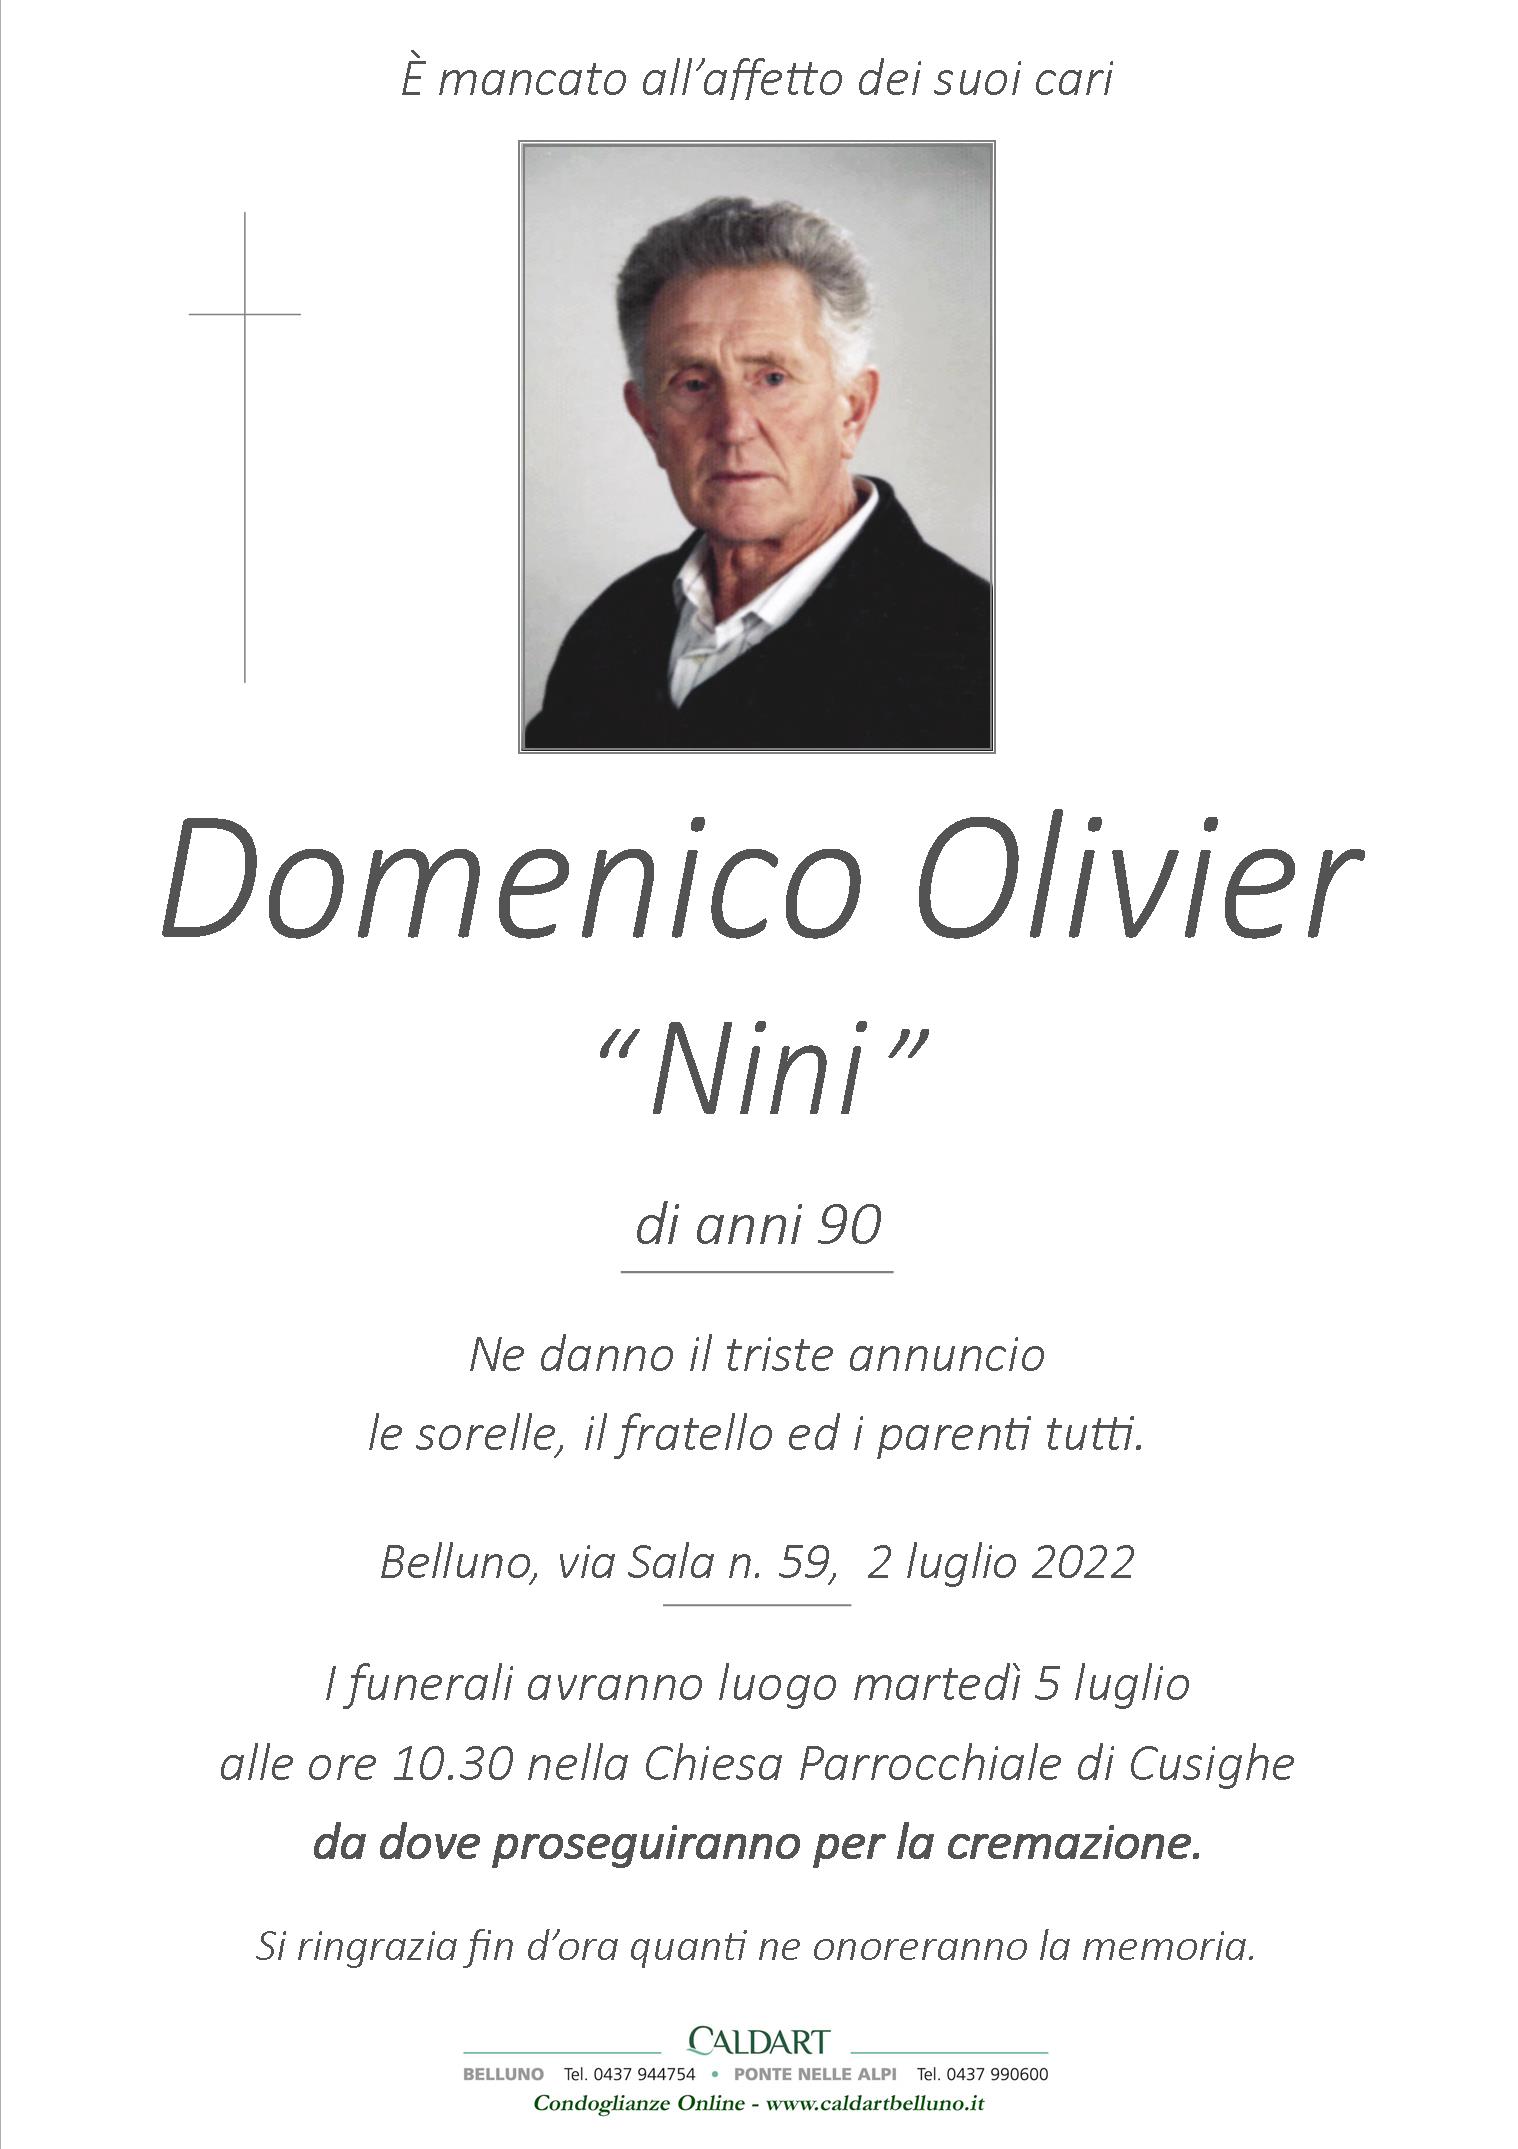 Olivier Domenico